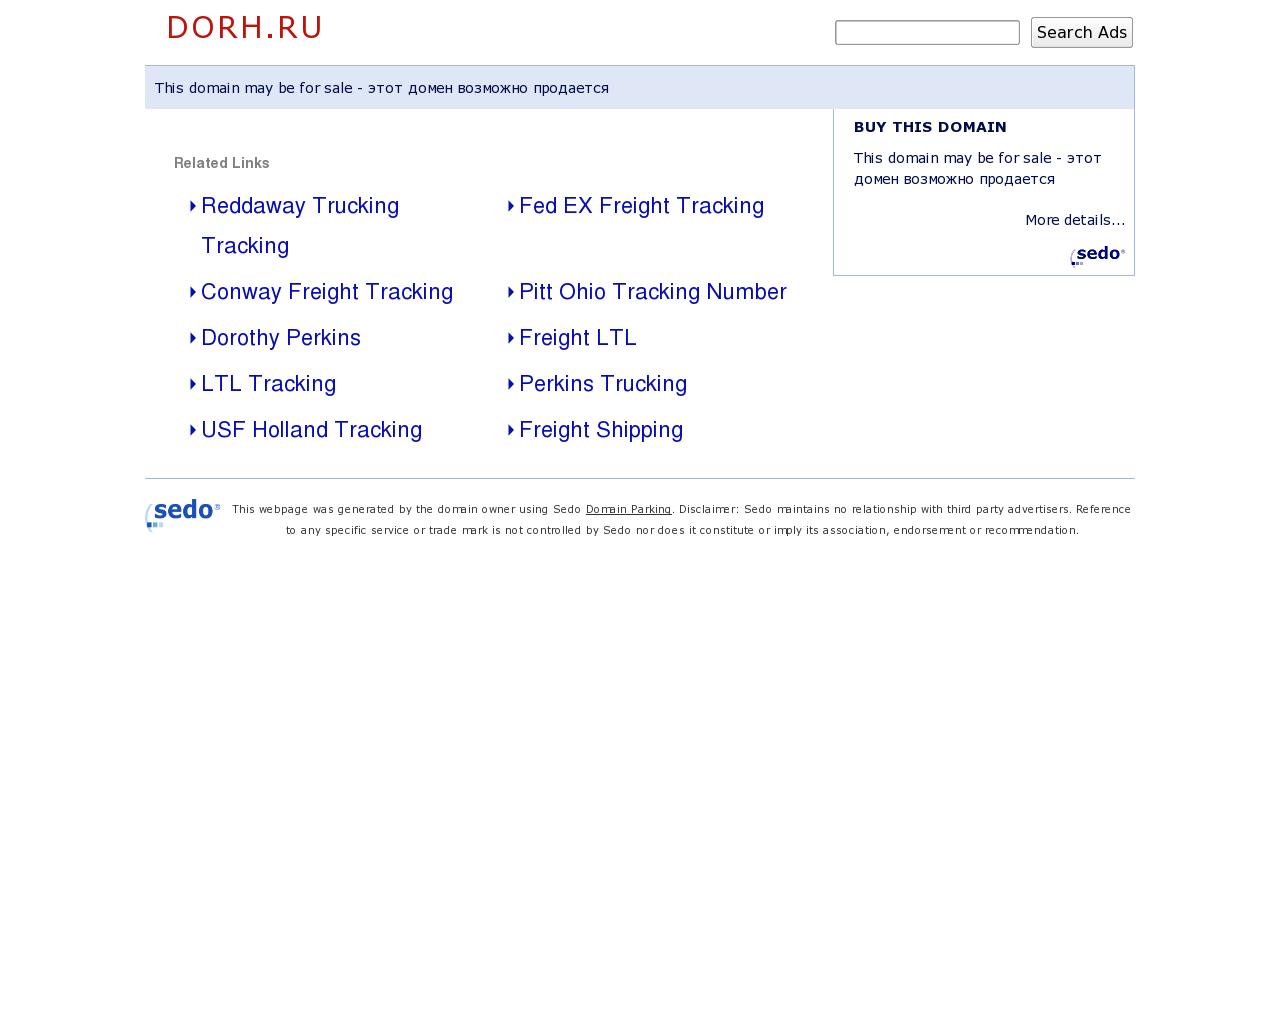 Изображение сайта dorh.ru в разрешении 1280x1024